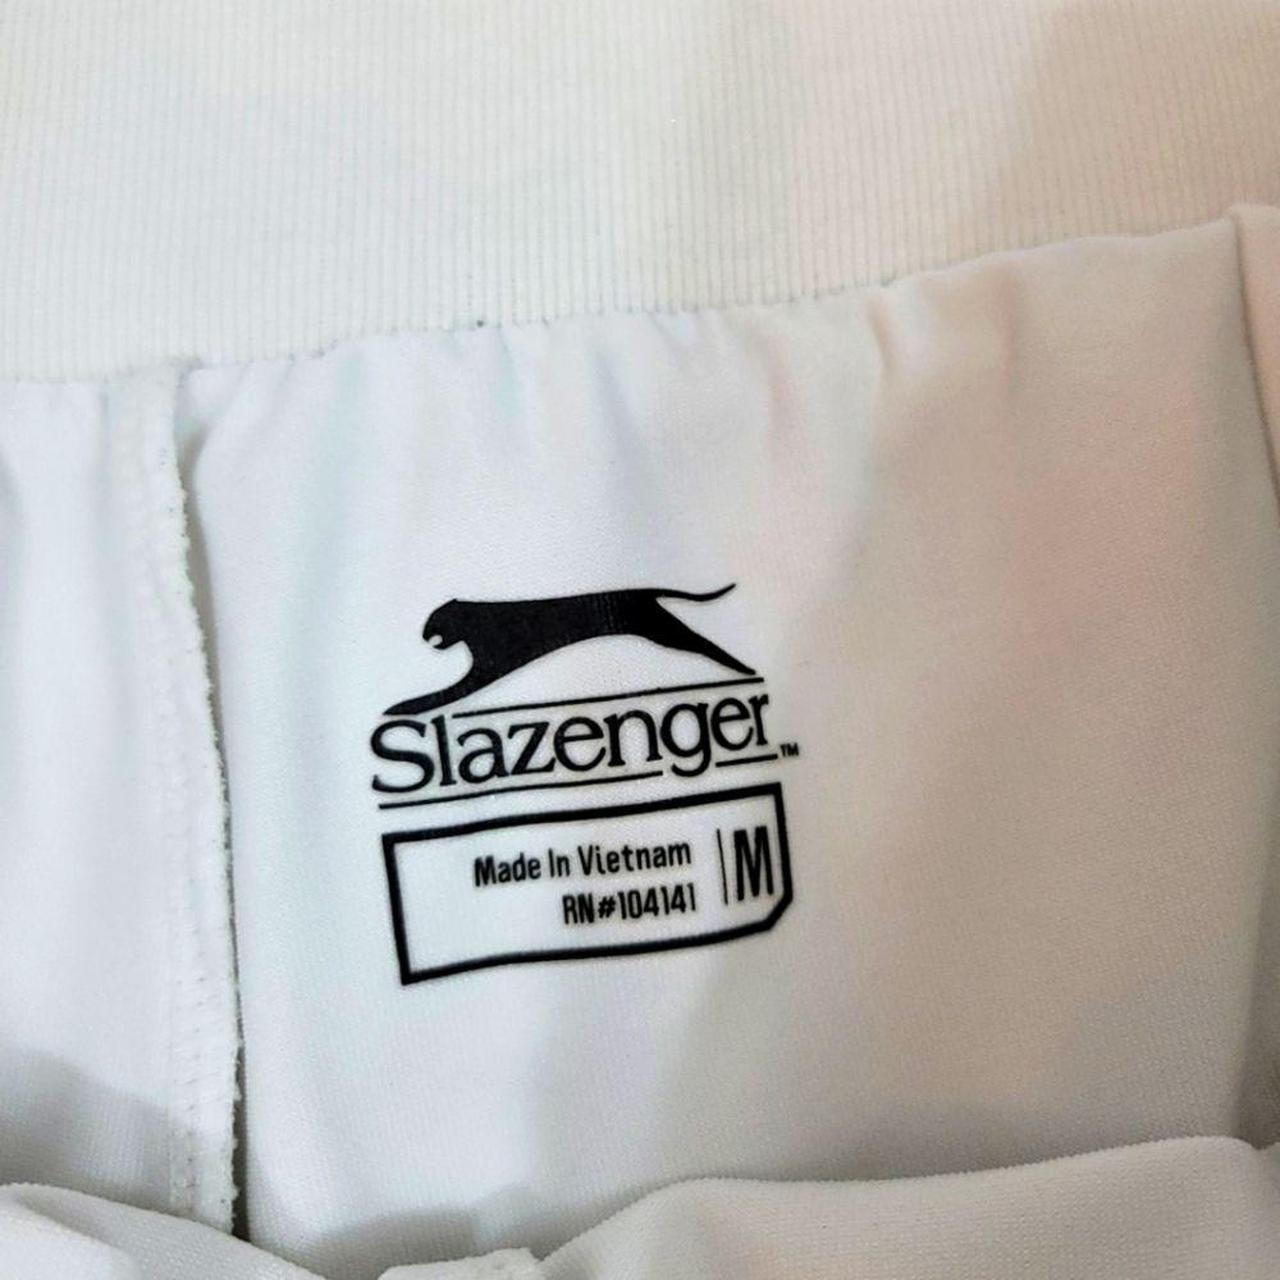 Product Image 4 - Slazenger White Tennis Skirt/Skort

Size Medium